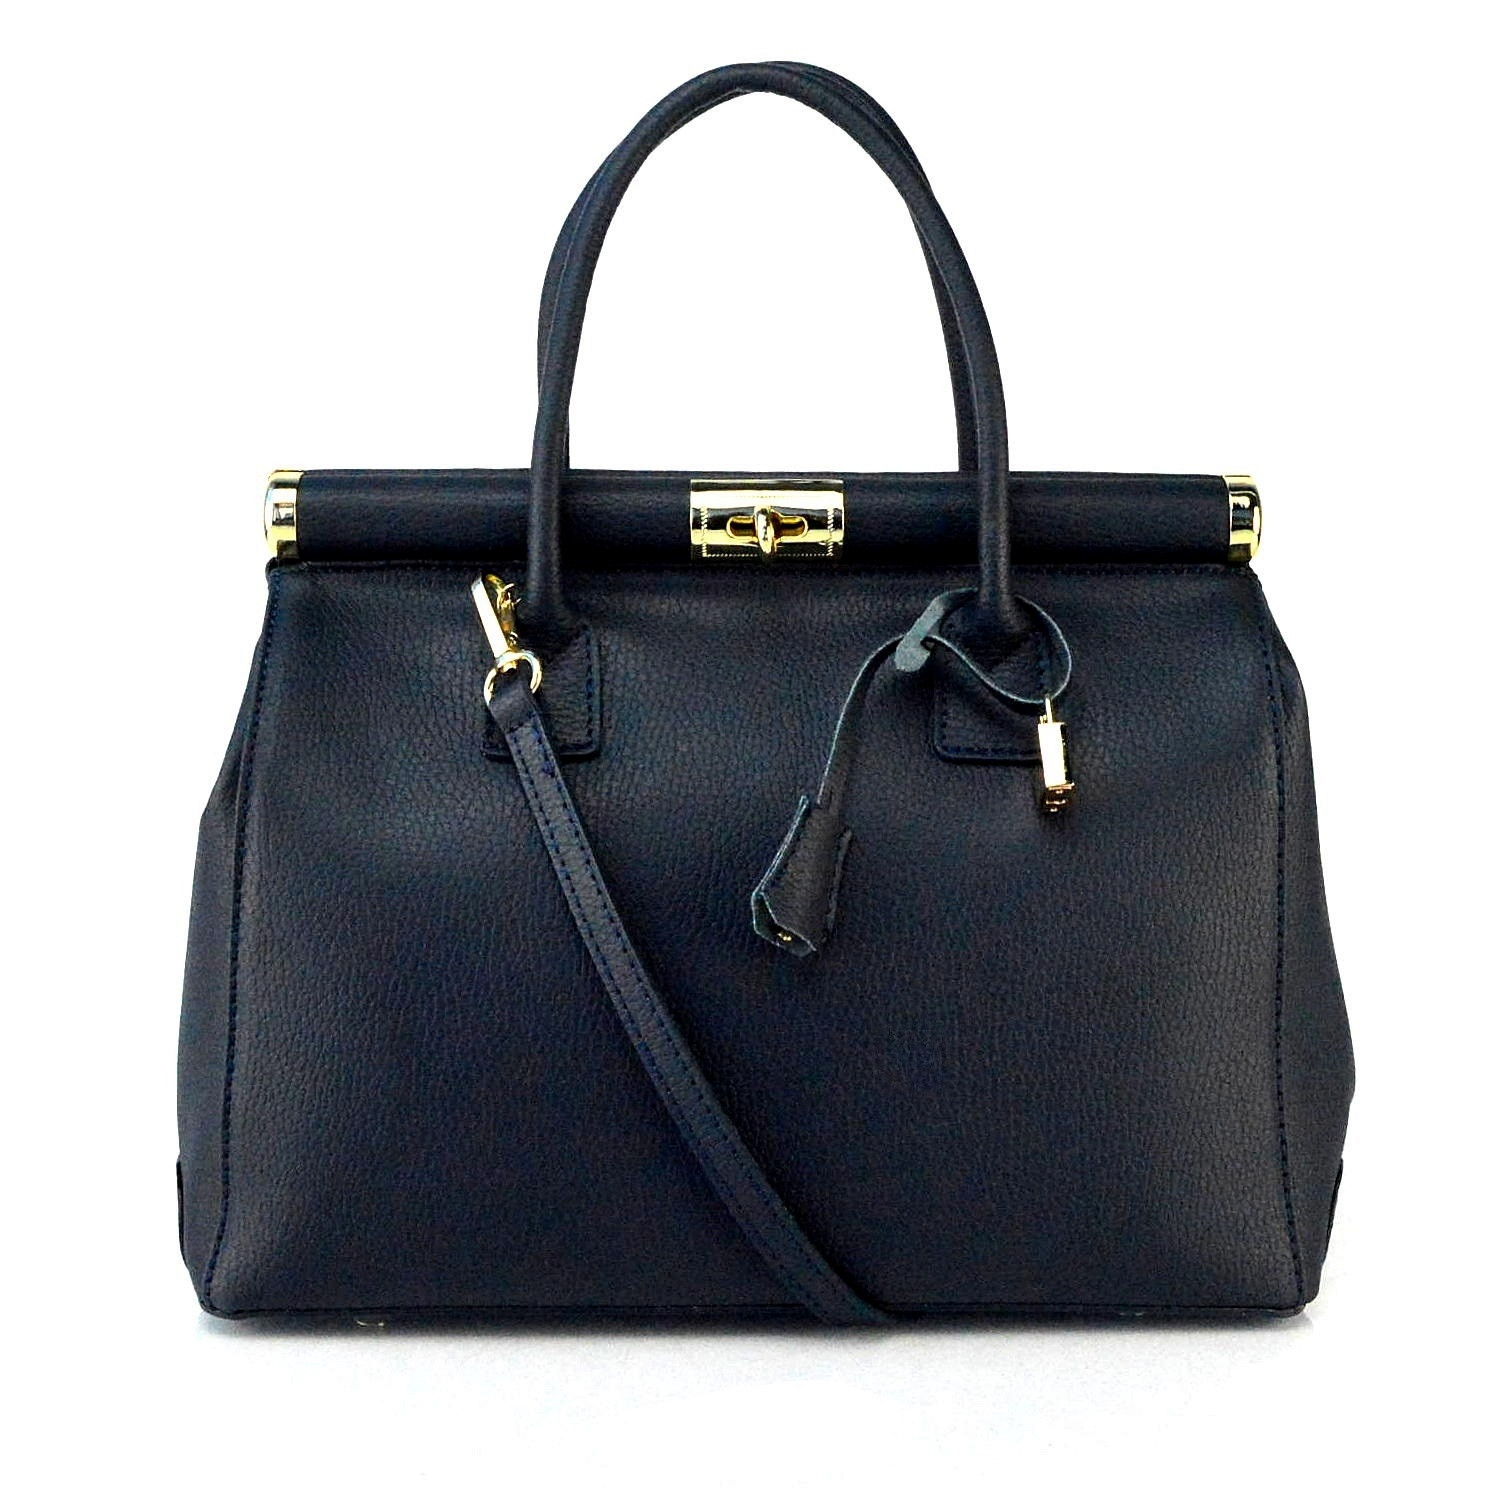 Stylová luxusní tmavě modrá kožená kabelka do ruky Aliste